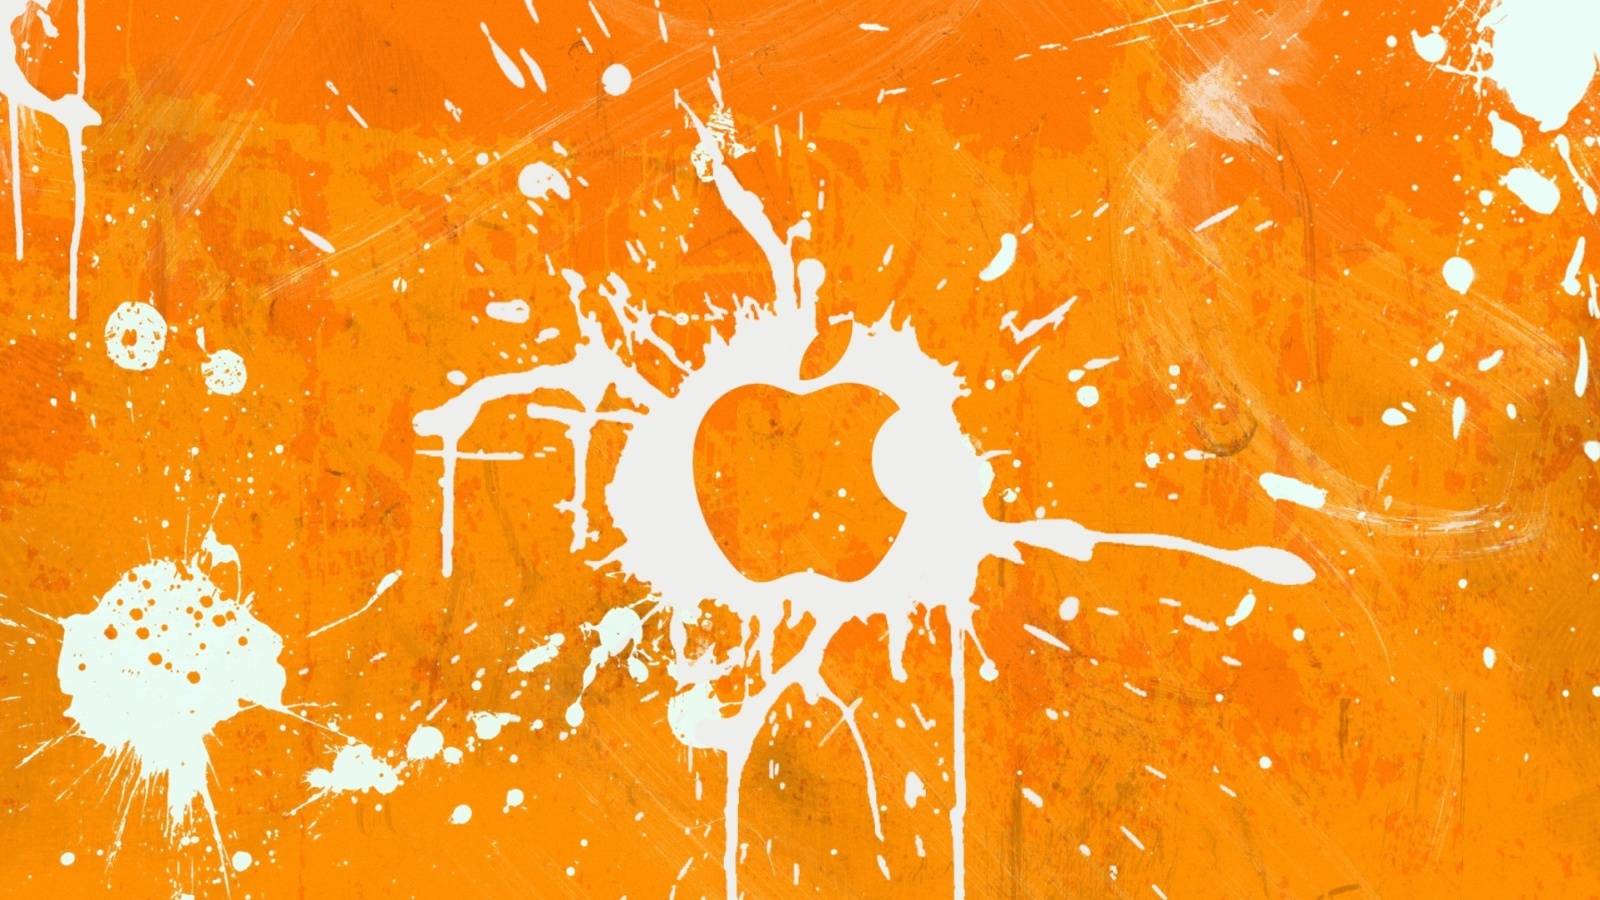 Обои Apple Orange Logo 1600x900